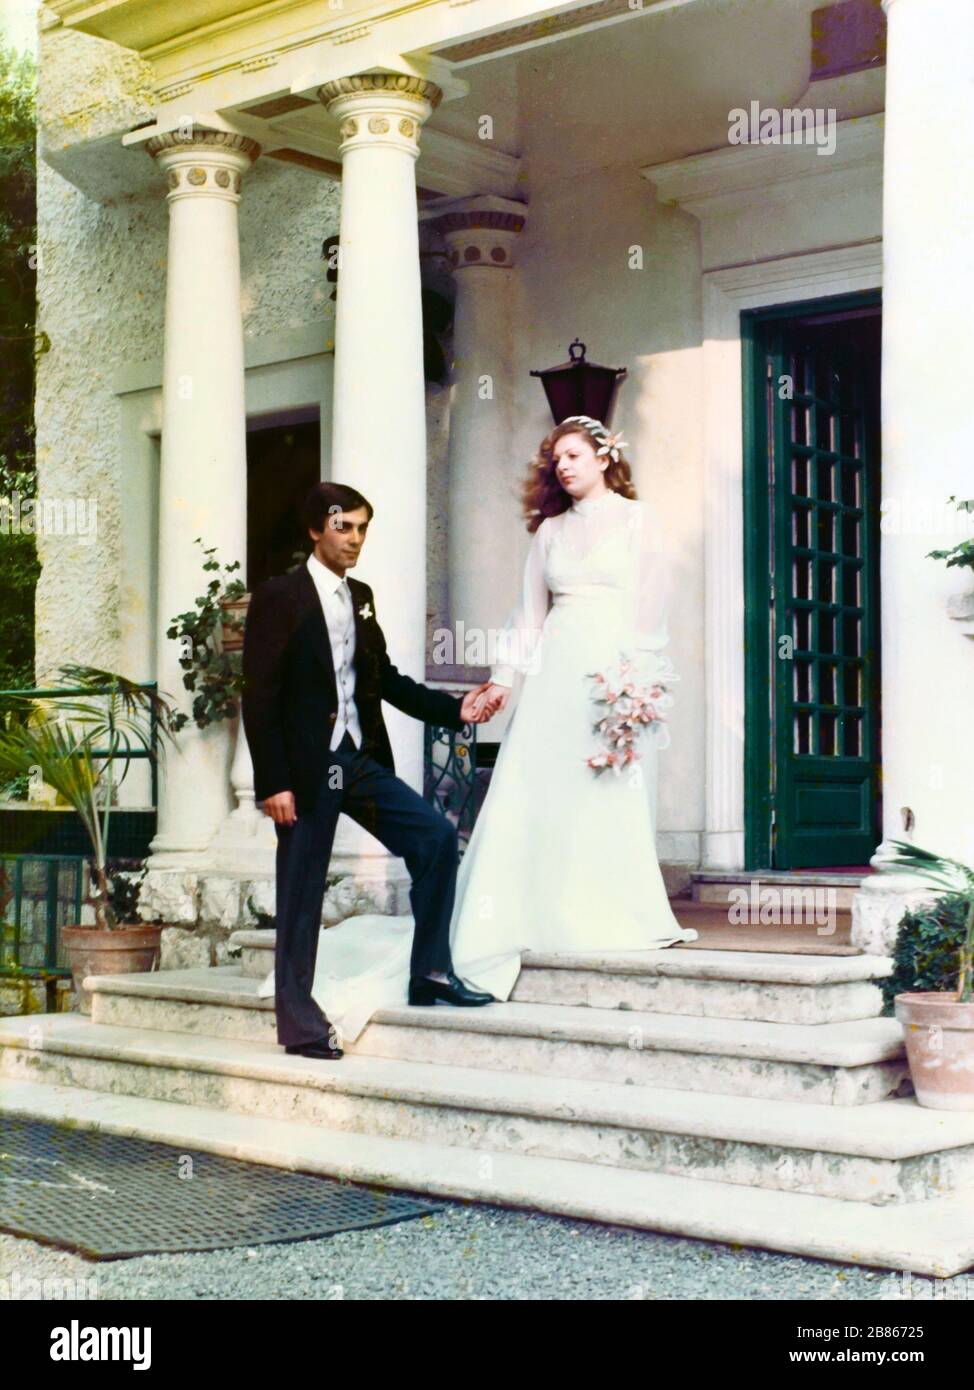 Coppia appena sposata durante il giorno del matrimonio. Immagine presa negli anni '80 in Italia. Foto Stock